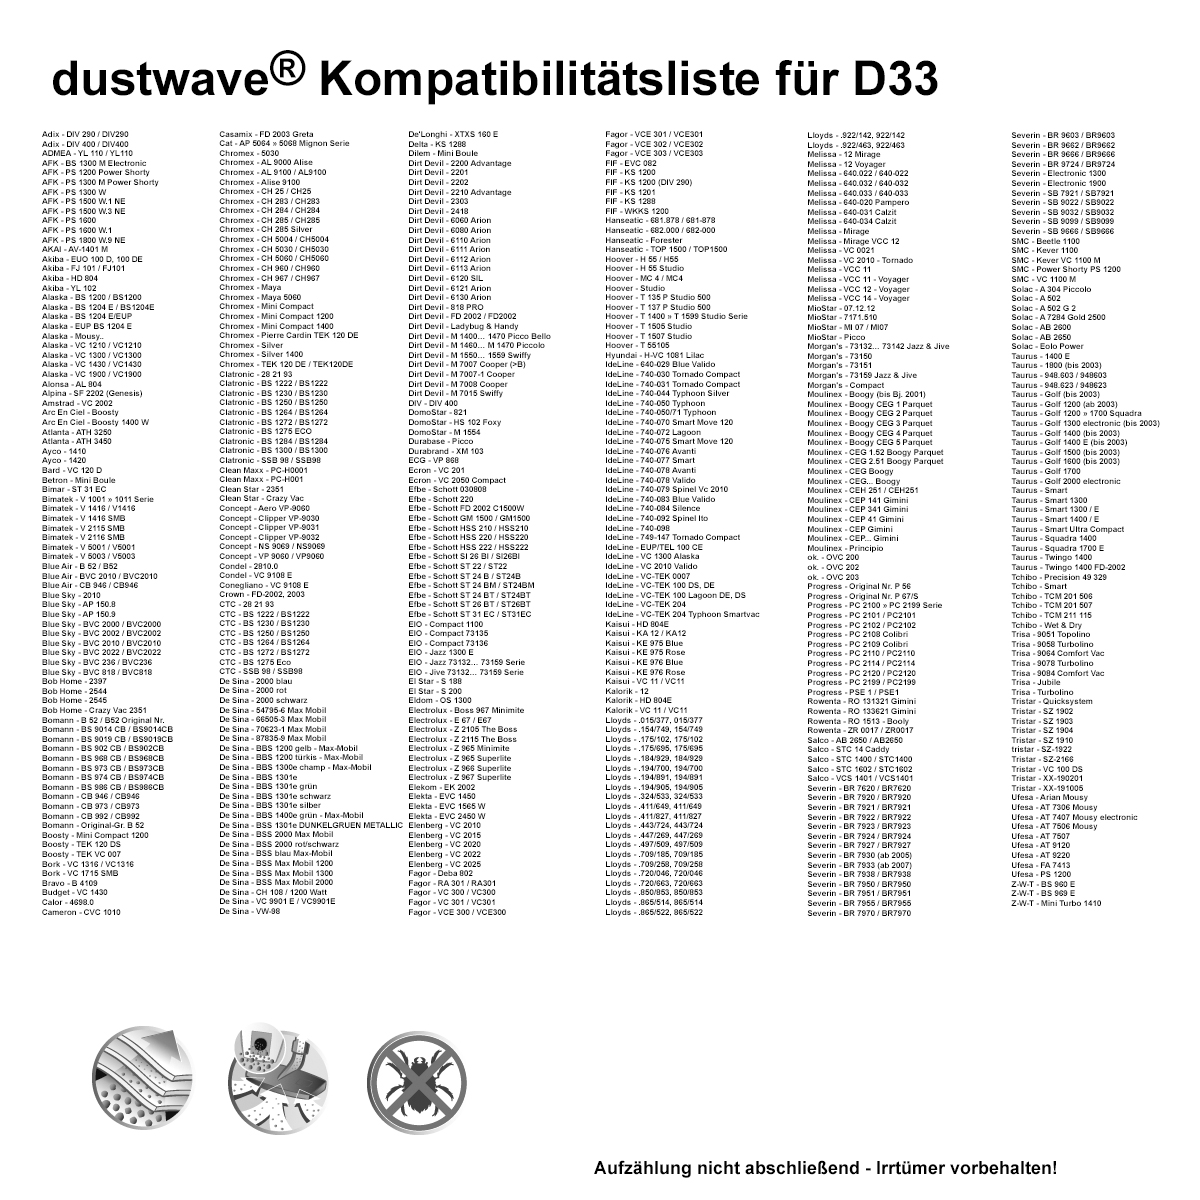 Dustwave® 20 Staubsaugerbeutel für Bimatek V 1011 / V1011 - hocheffizient, mehrlagiges Mikrovlies mit Hygieneverschluss - Made in Germany